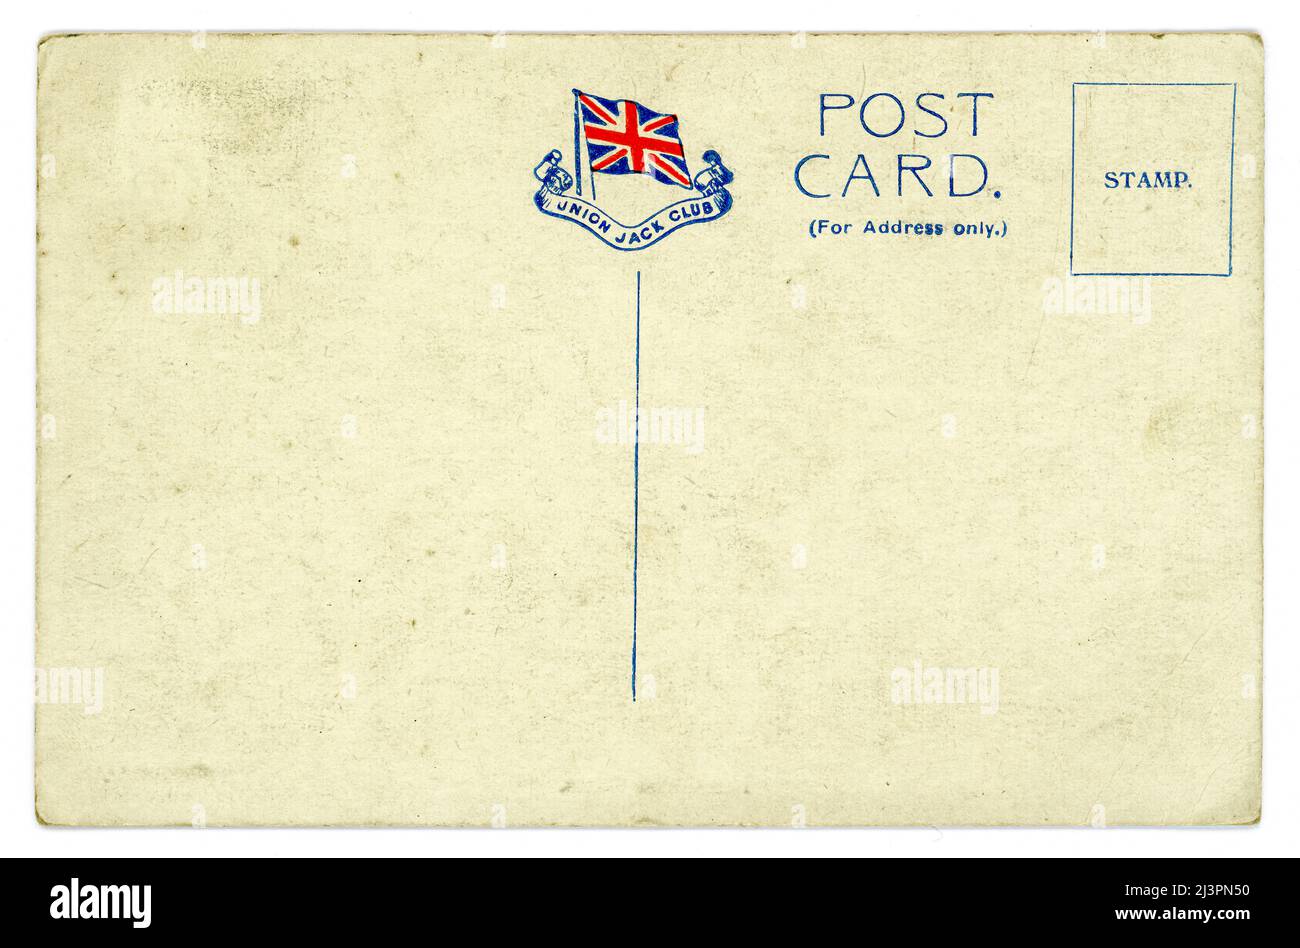 Original Postkarte aus der Zeit WW1 mit dem Logo des Union Jack Club, 91A Waterloo Road, Lambeth, London, U.K. der Union Jack Club wurde 1907 eröffnet und bietet Unterkunft, Restaurant, Besprechungs- und Lesesäle für Militärangehörige während ihres Aufenthalts in London. Es sah viel Nutzen während beider Weltkriege. Postkarte herausgegeben vom Union Jack Club. Um 1915. Stockfoto